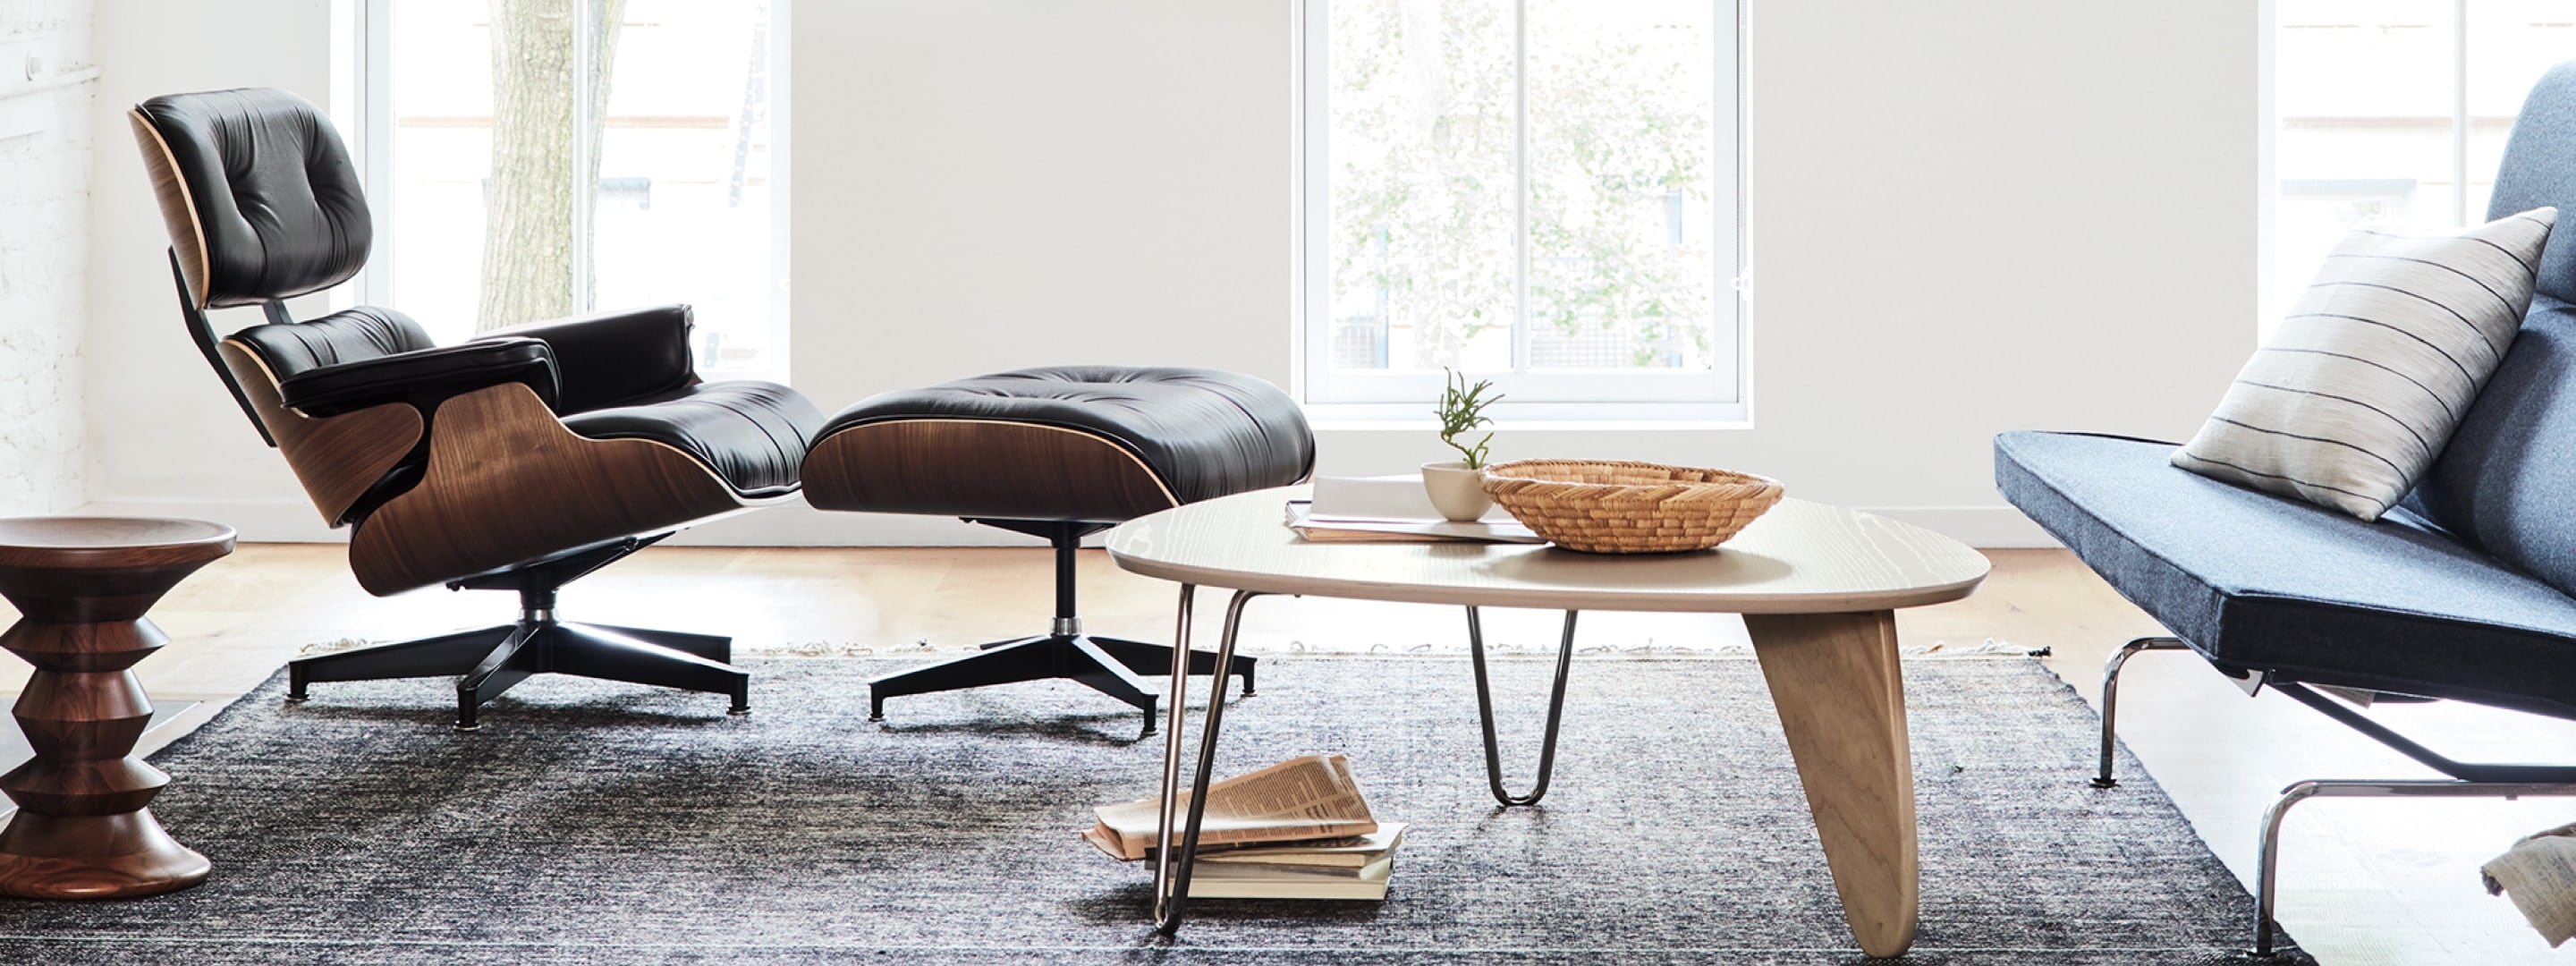 客厅摆放着 Eames 休闲椅和脚凳、Noguchi Rudder 桌子、Eames 紧凑型沙发和 Eames 胡桃木凳子，背景为大窗户。